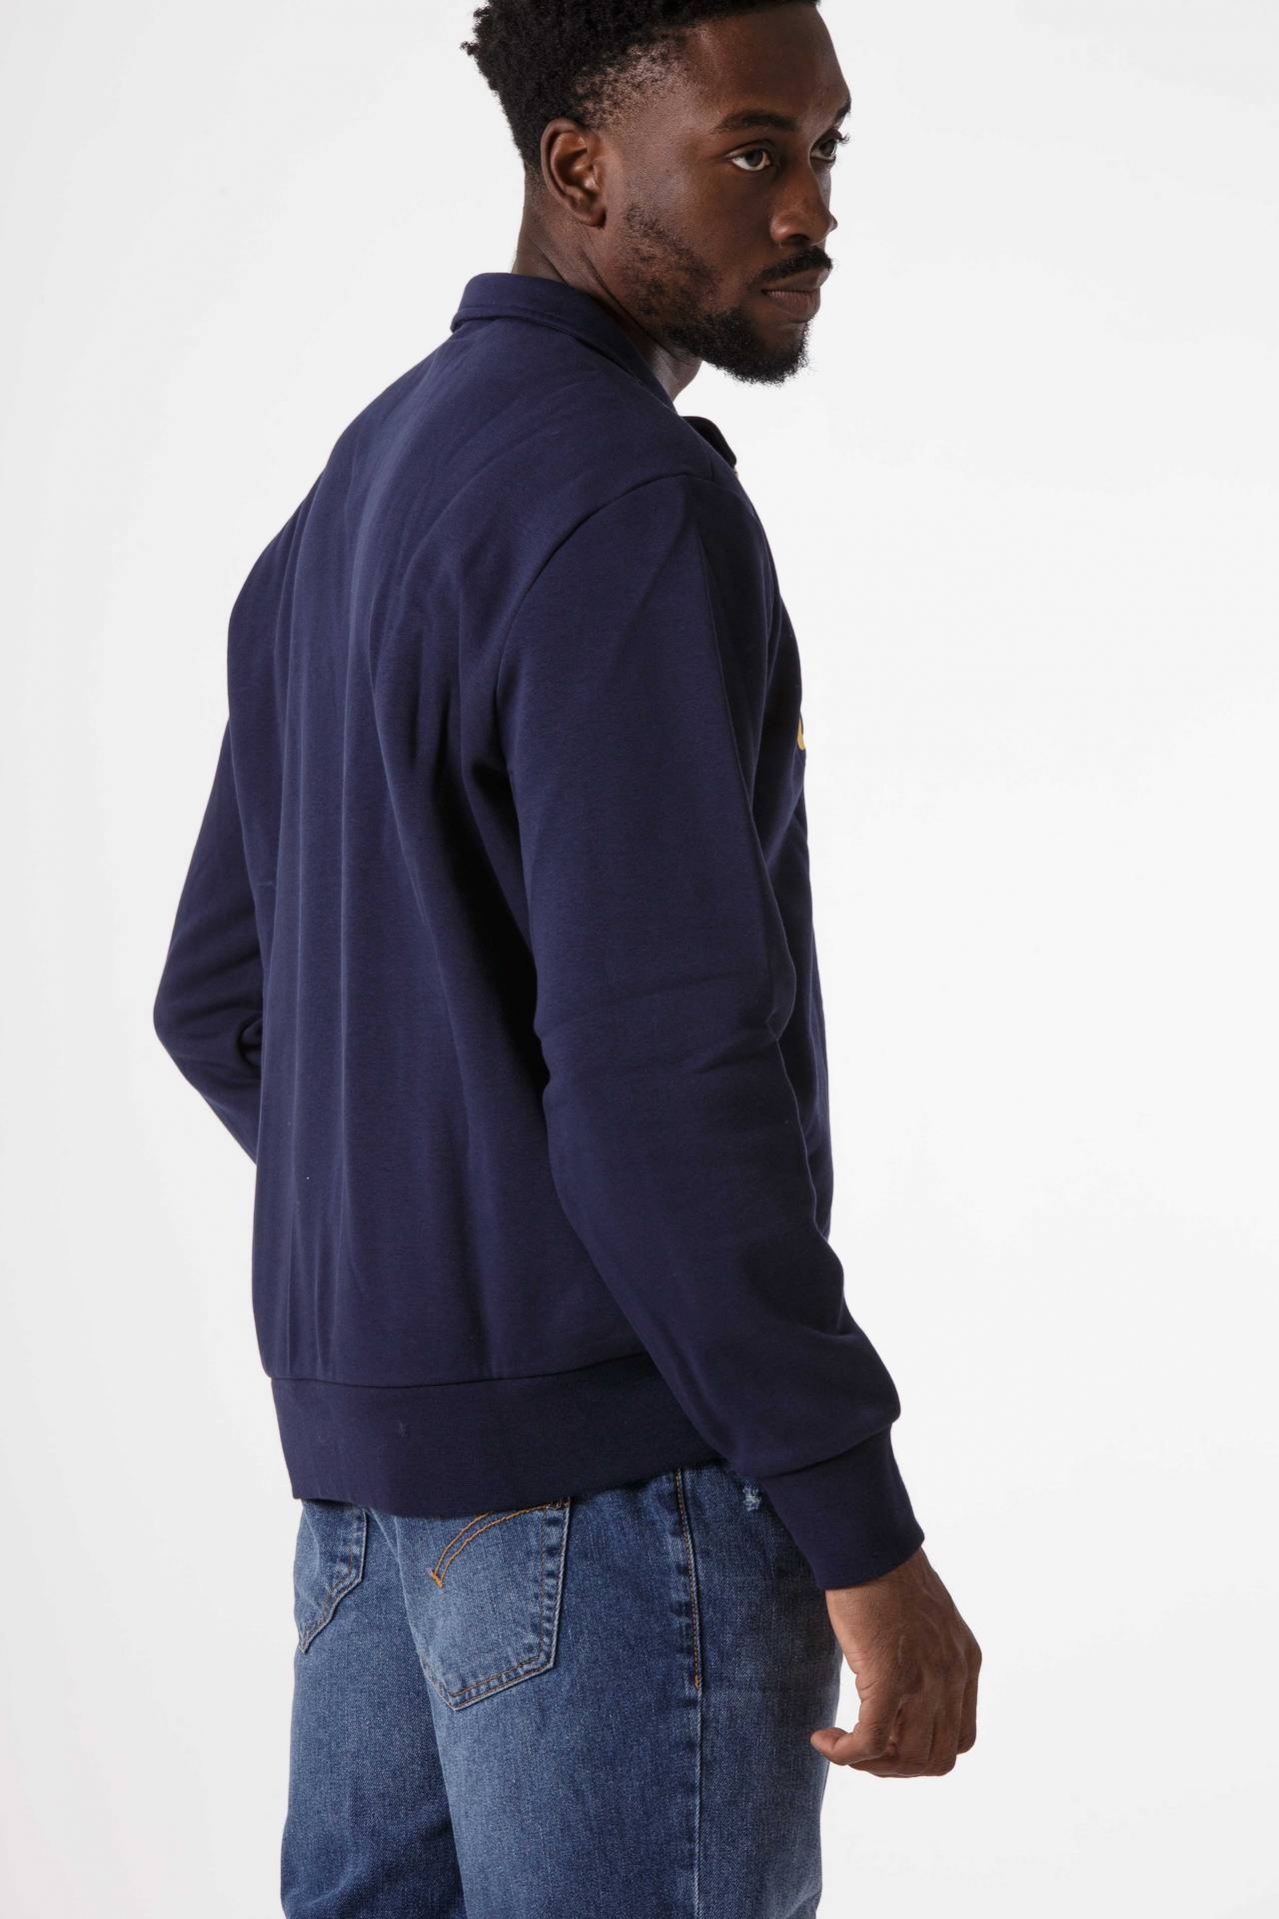 Sweatshirt with zip